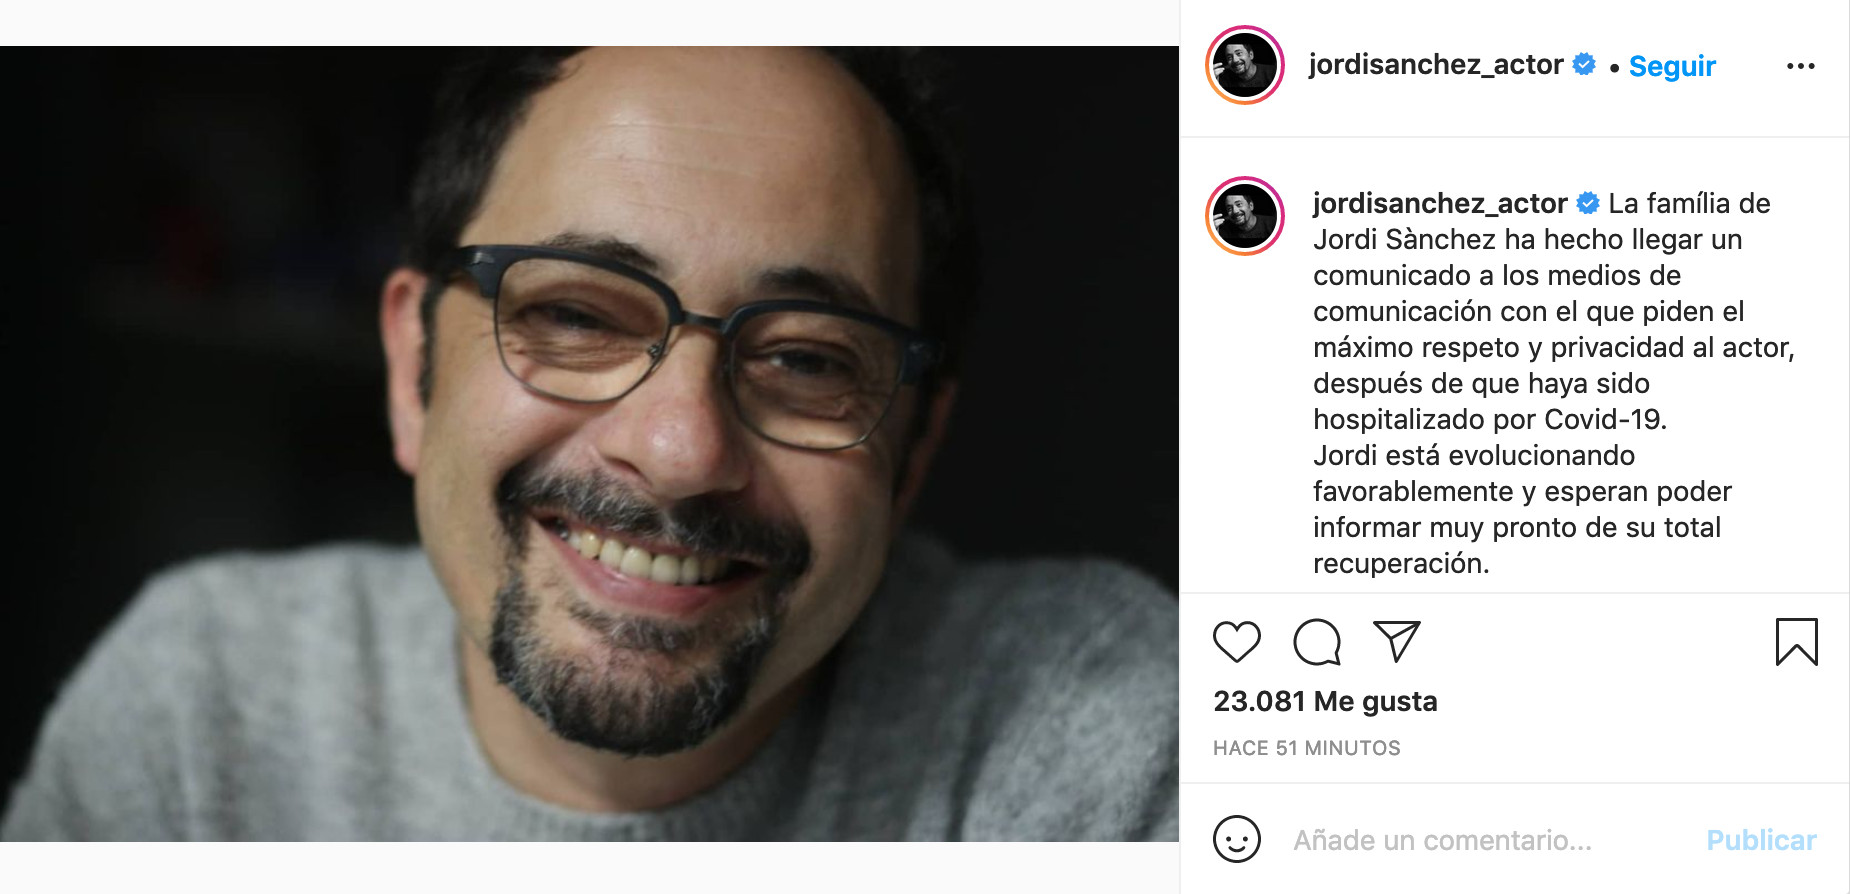 La familia de Jordi Sánchez confirma que evoluciona favorablemente / INSTAGRAM